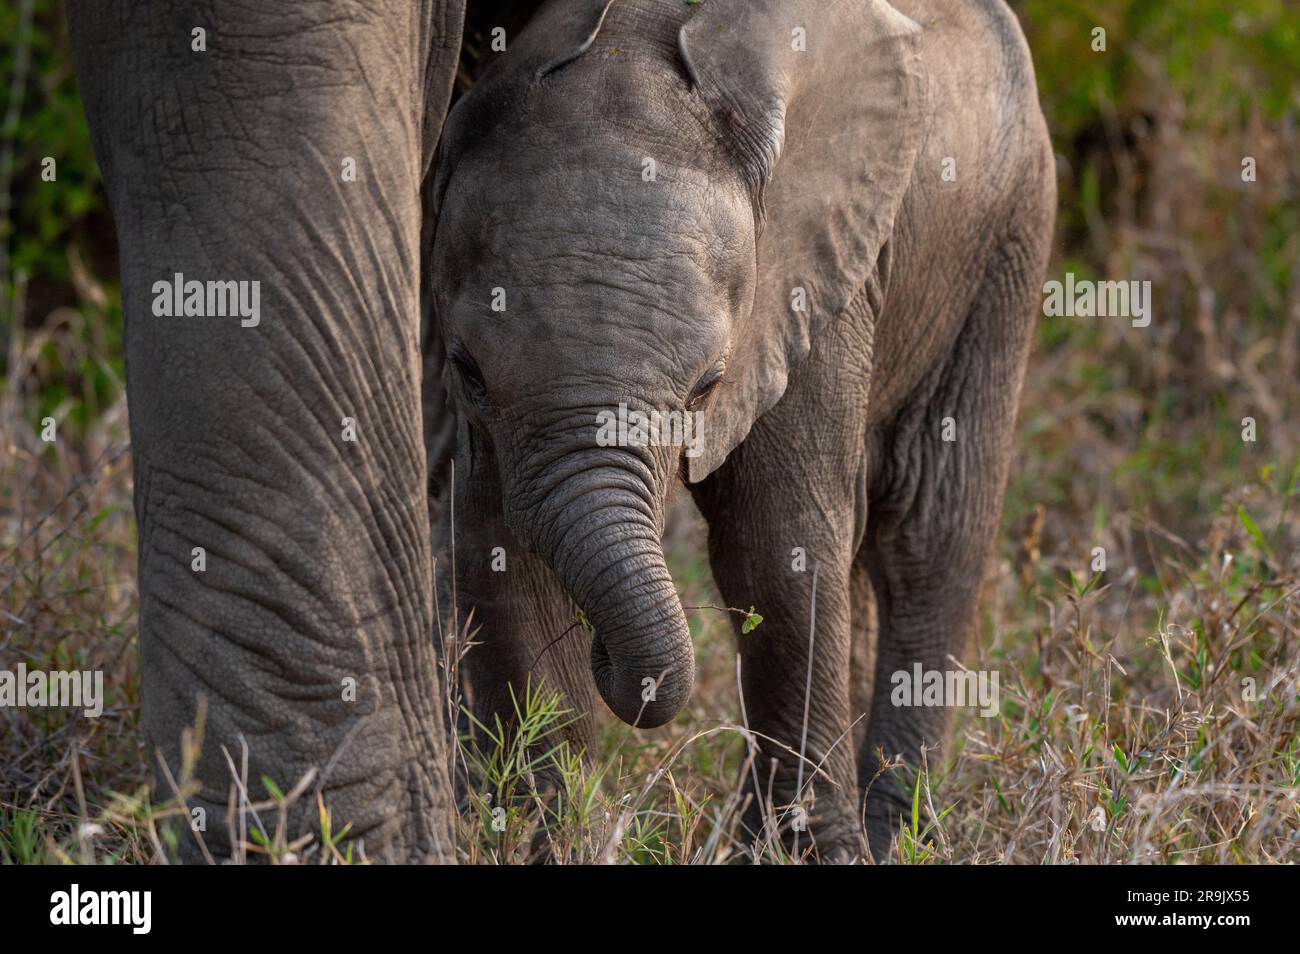 Un bébé éléphant, Loxodonta africana, marchant à côté de la jambe de sa mère. Banque D'Images